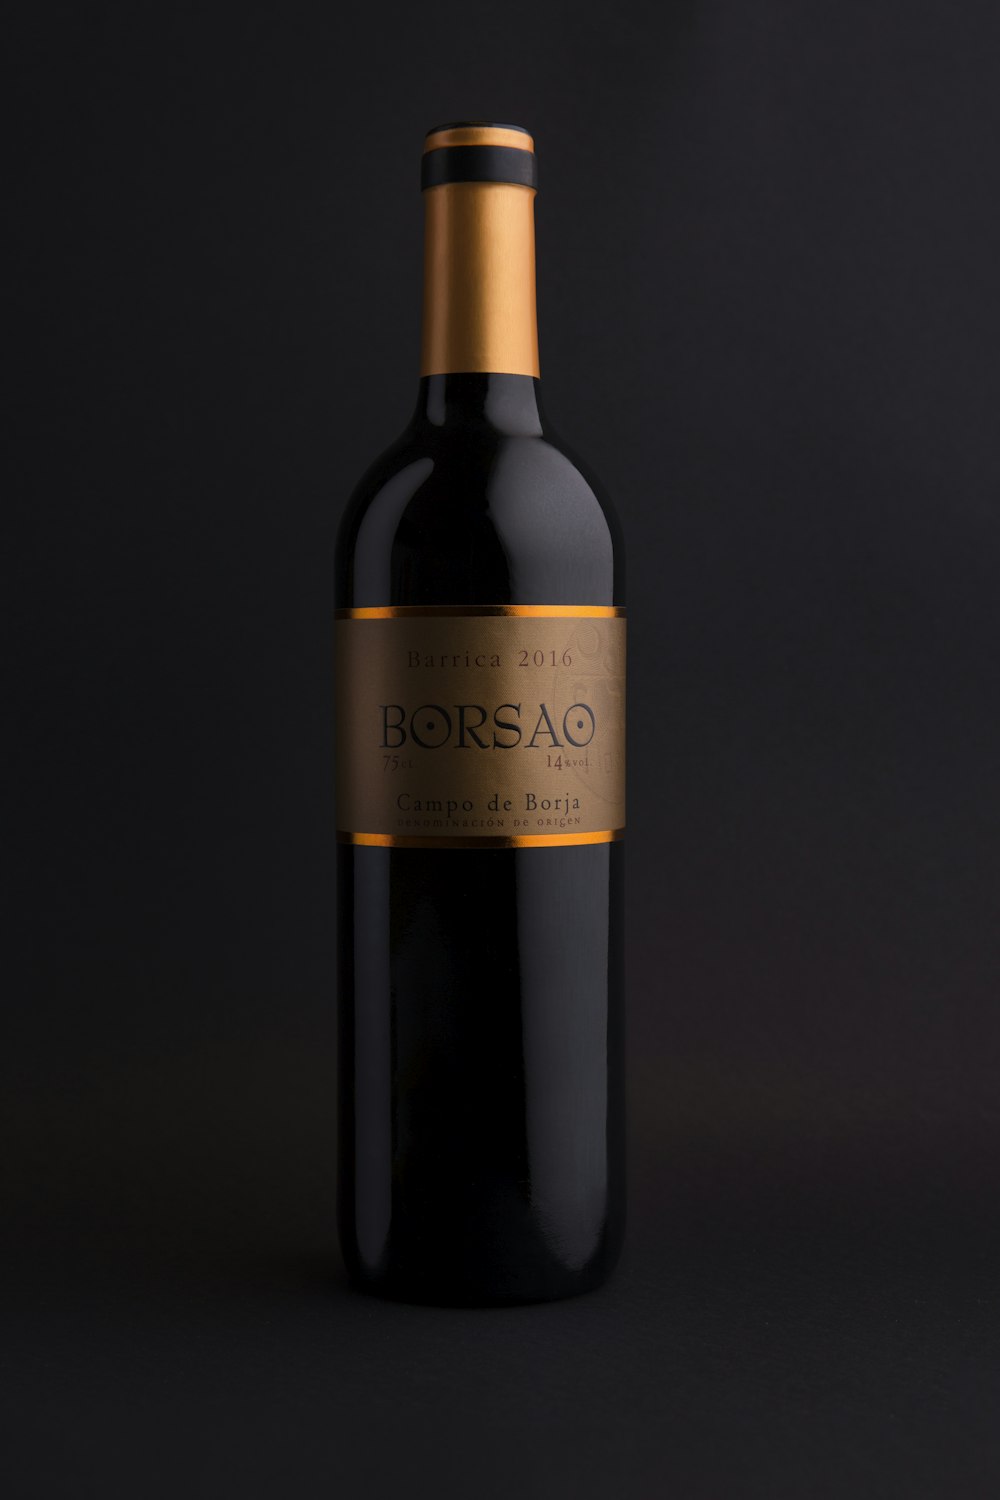 Bouteille de vin Borsao 2014